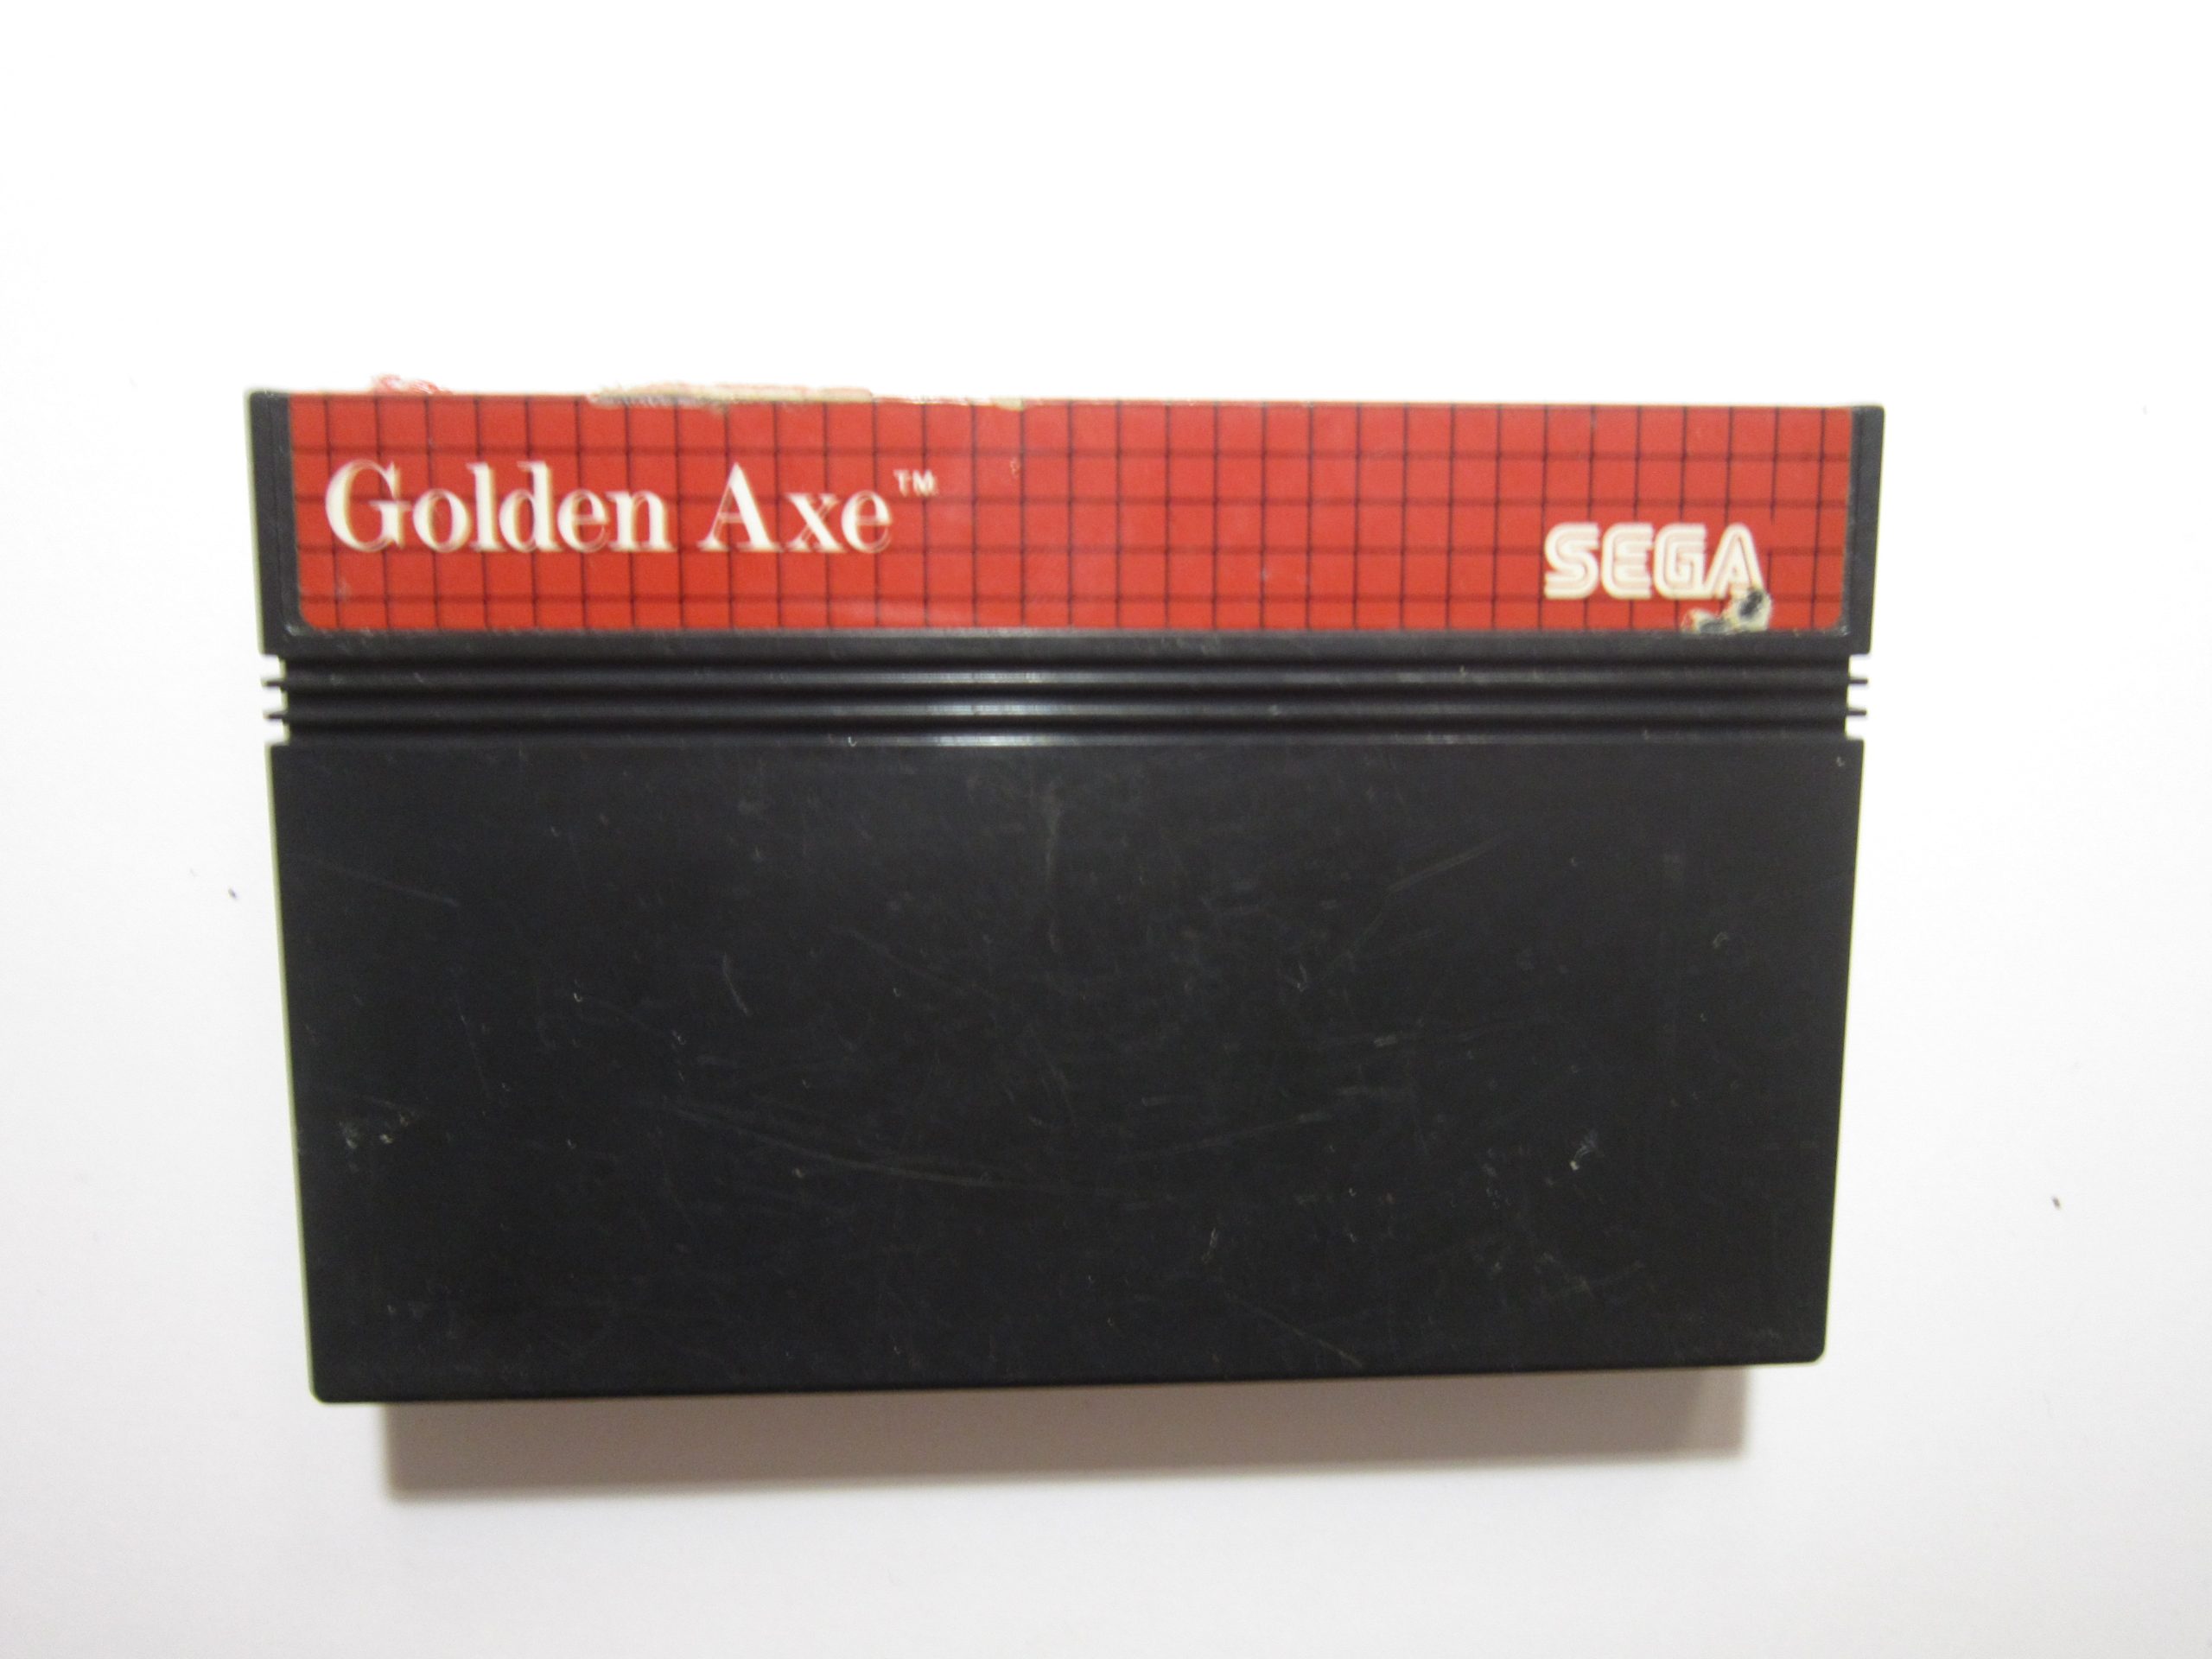 Sega - Golden Axe